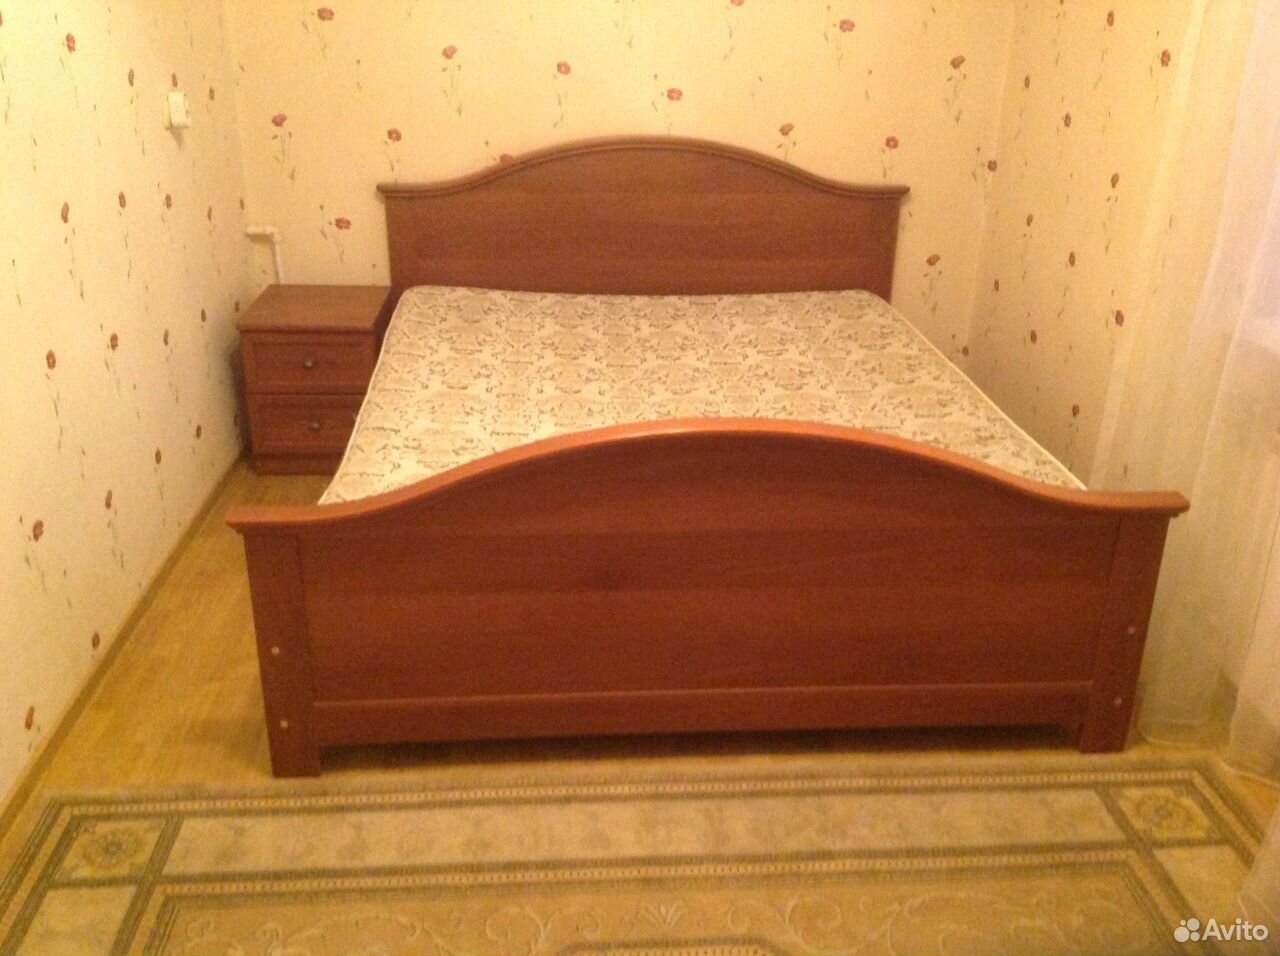 Авито прокопьевск купить бу. Бэушные кровати. Кровать 2х спальная Старая. БЭУШНАЯ кровать. 1 5 Спальная кровать старого образца.